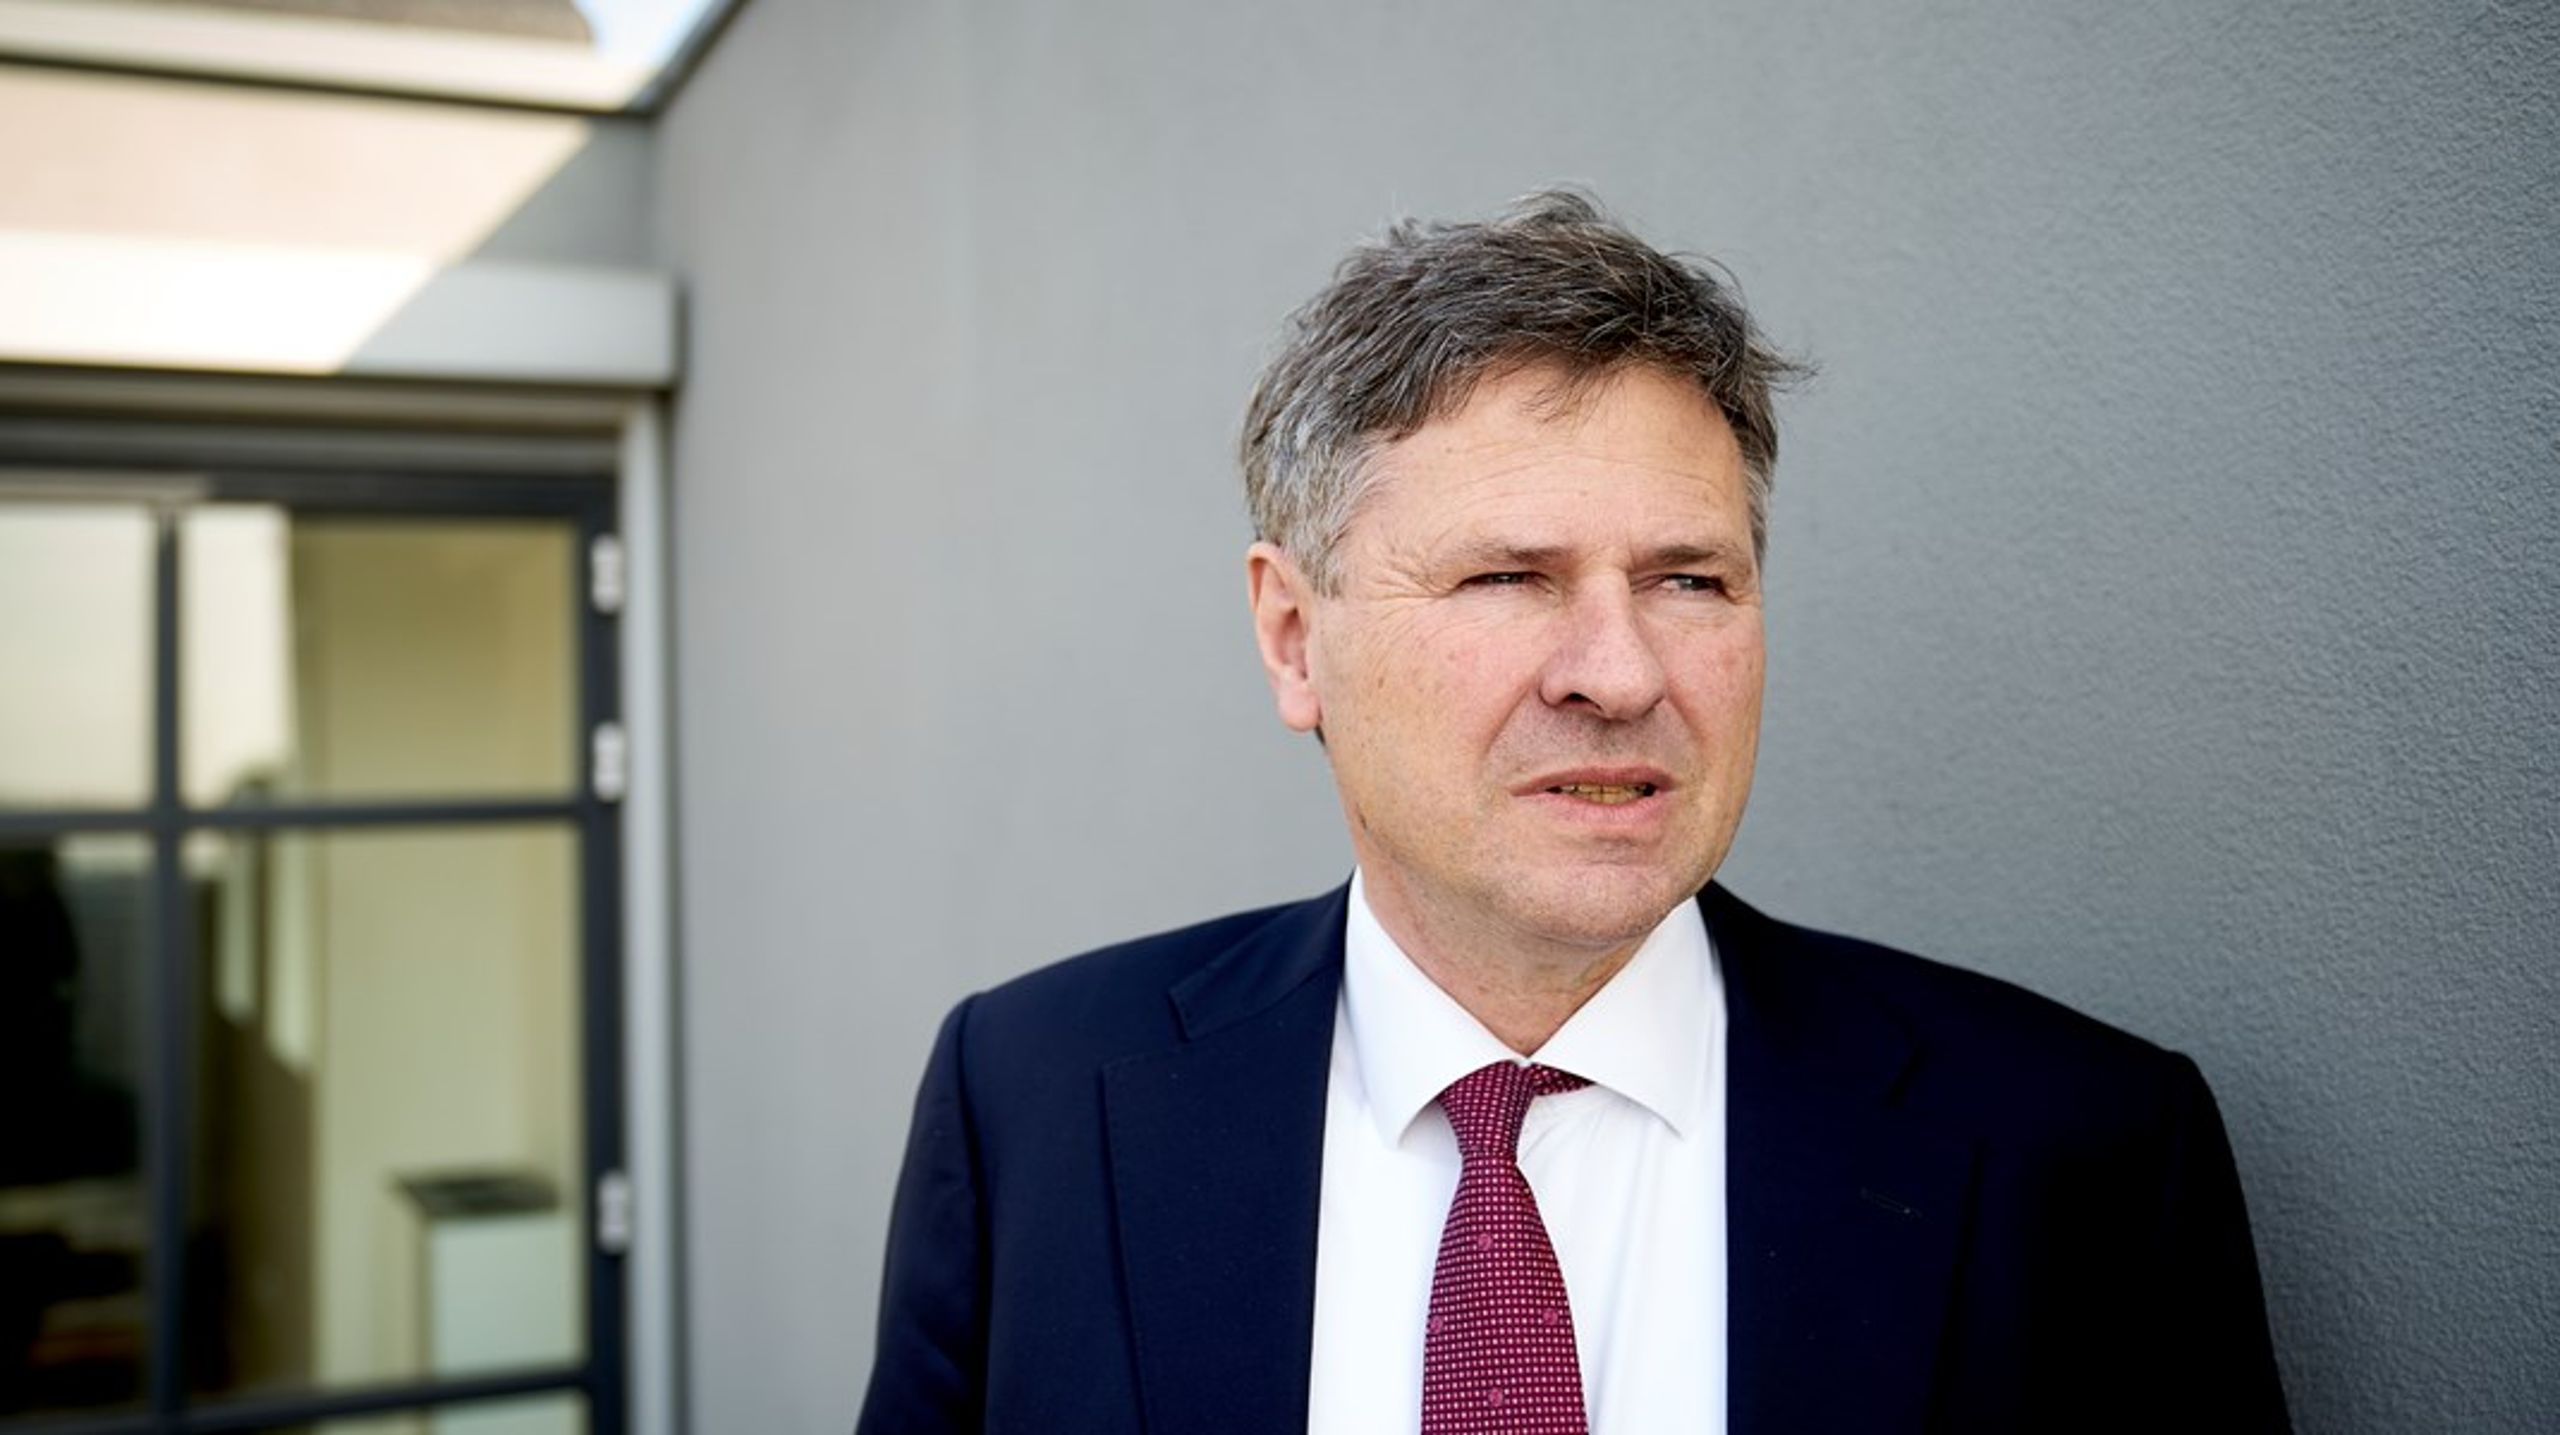 Finanstilsynets direktør, Jesper Berg, har valgt at indgive sin afskedsbegæring. Tilsynet skal derfor på jagt efter en ny direktør.&nbsp;